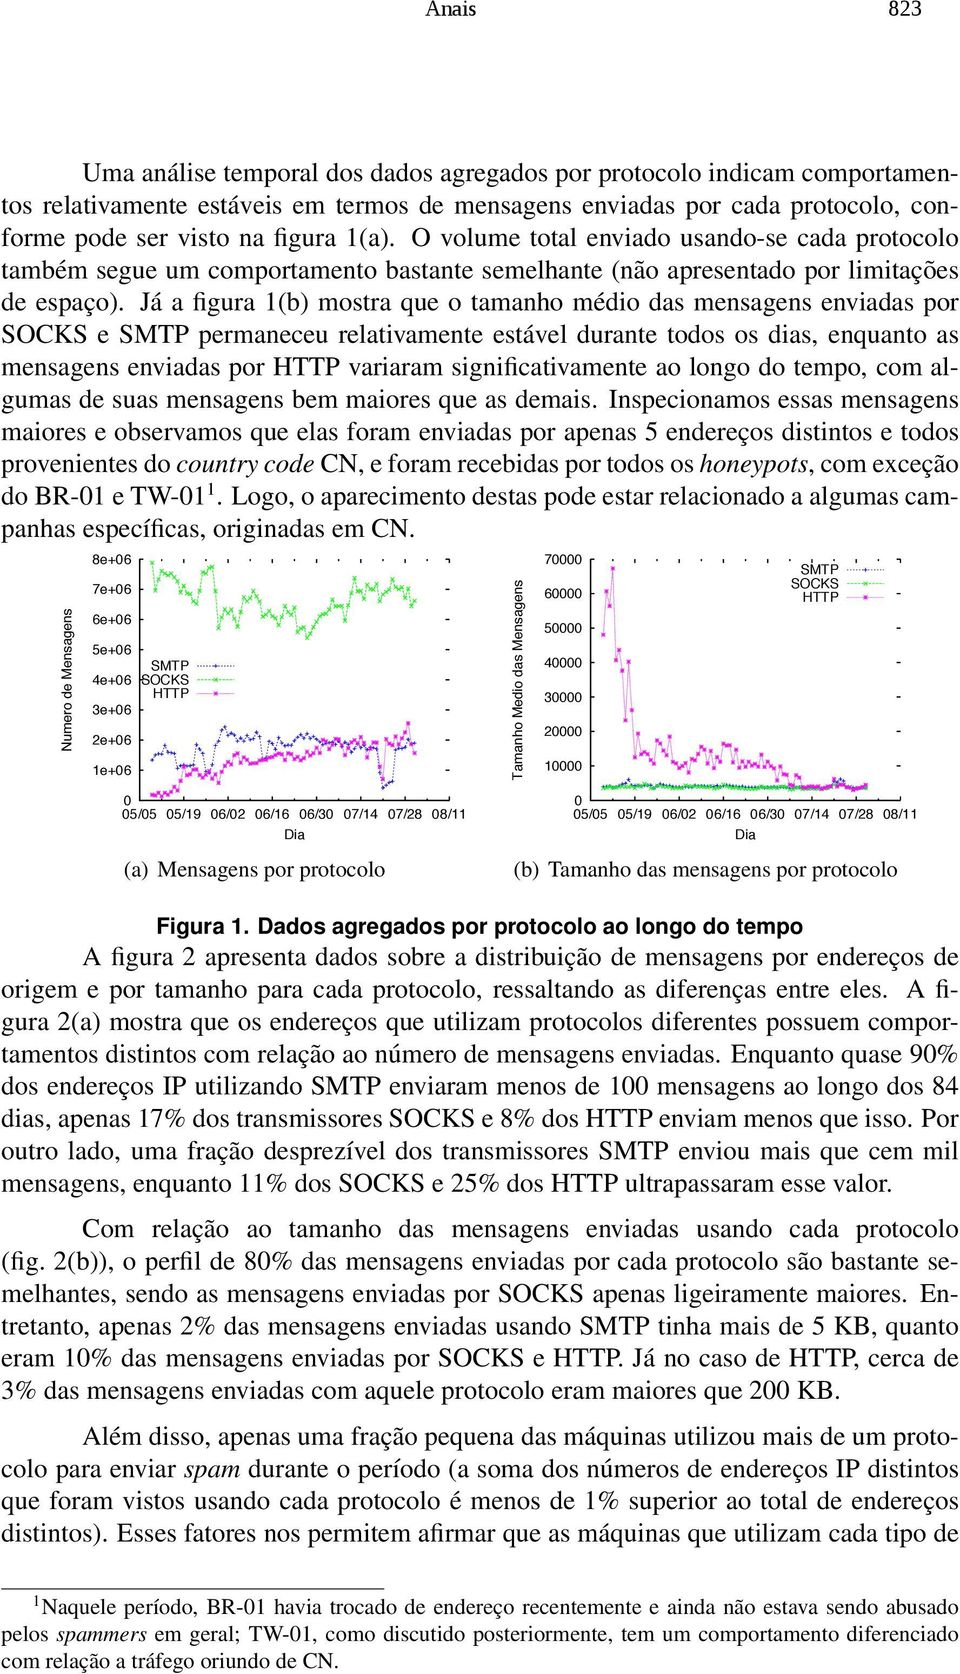 Já a figura 1(b) mostra que o tamanho médio das mensagens enviadas por SOCKS e SMTP permaneceu relativamente estável durante todos os dias, enquanto as mensagens enviadas por HTTP variaram